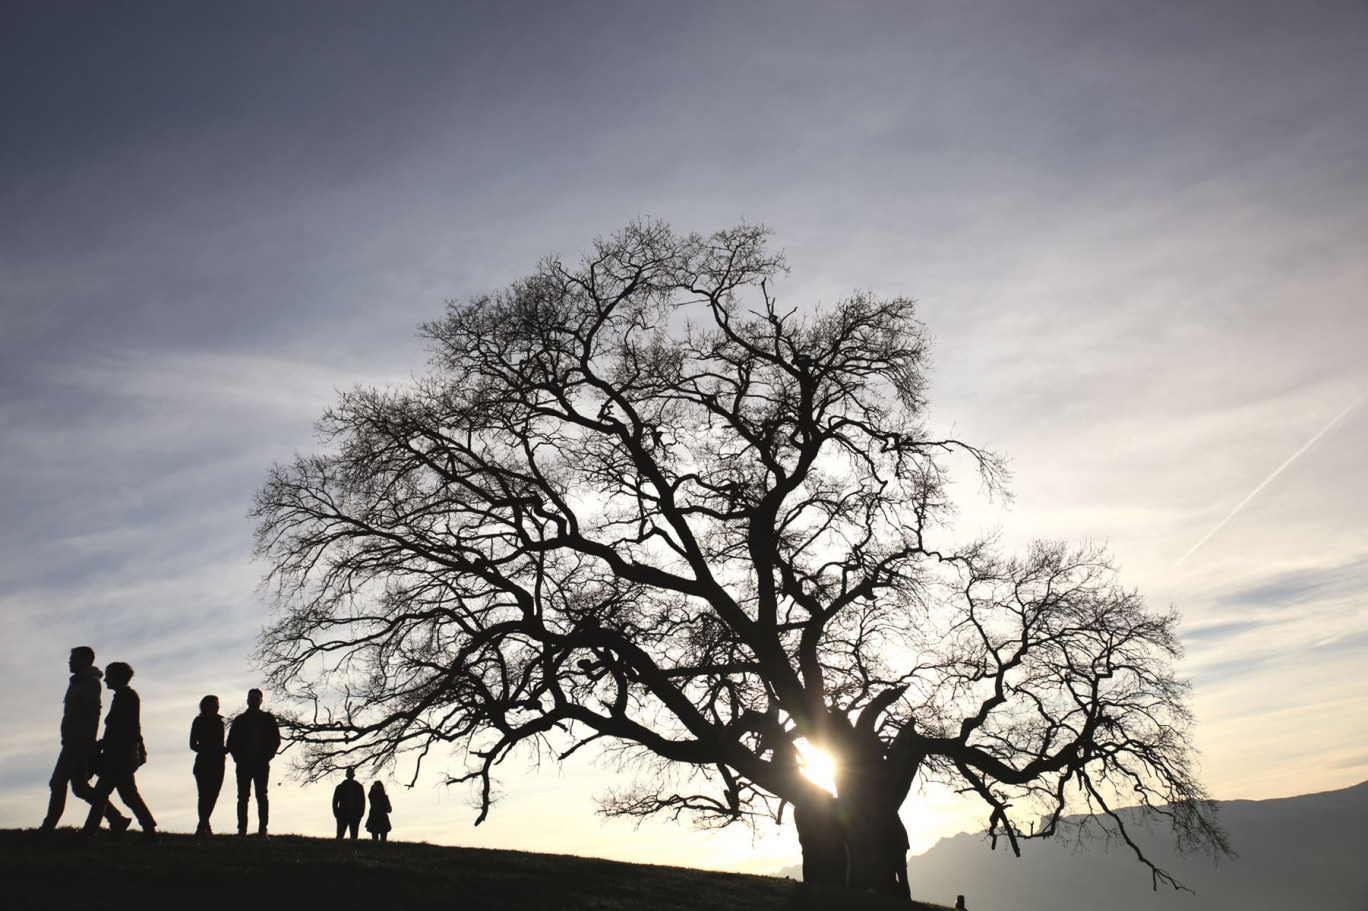 Le chêne de Venon est réputé pour être l'arbre le plus photographié des Alpes françaises. © Caroline Thermoz-Liaudy